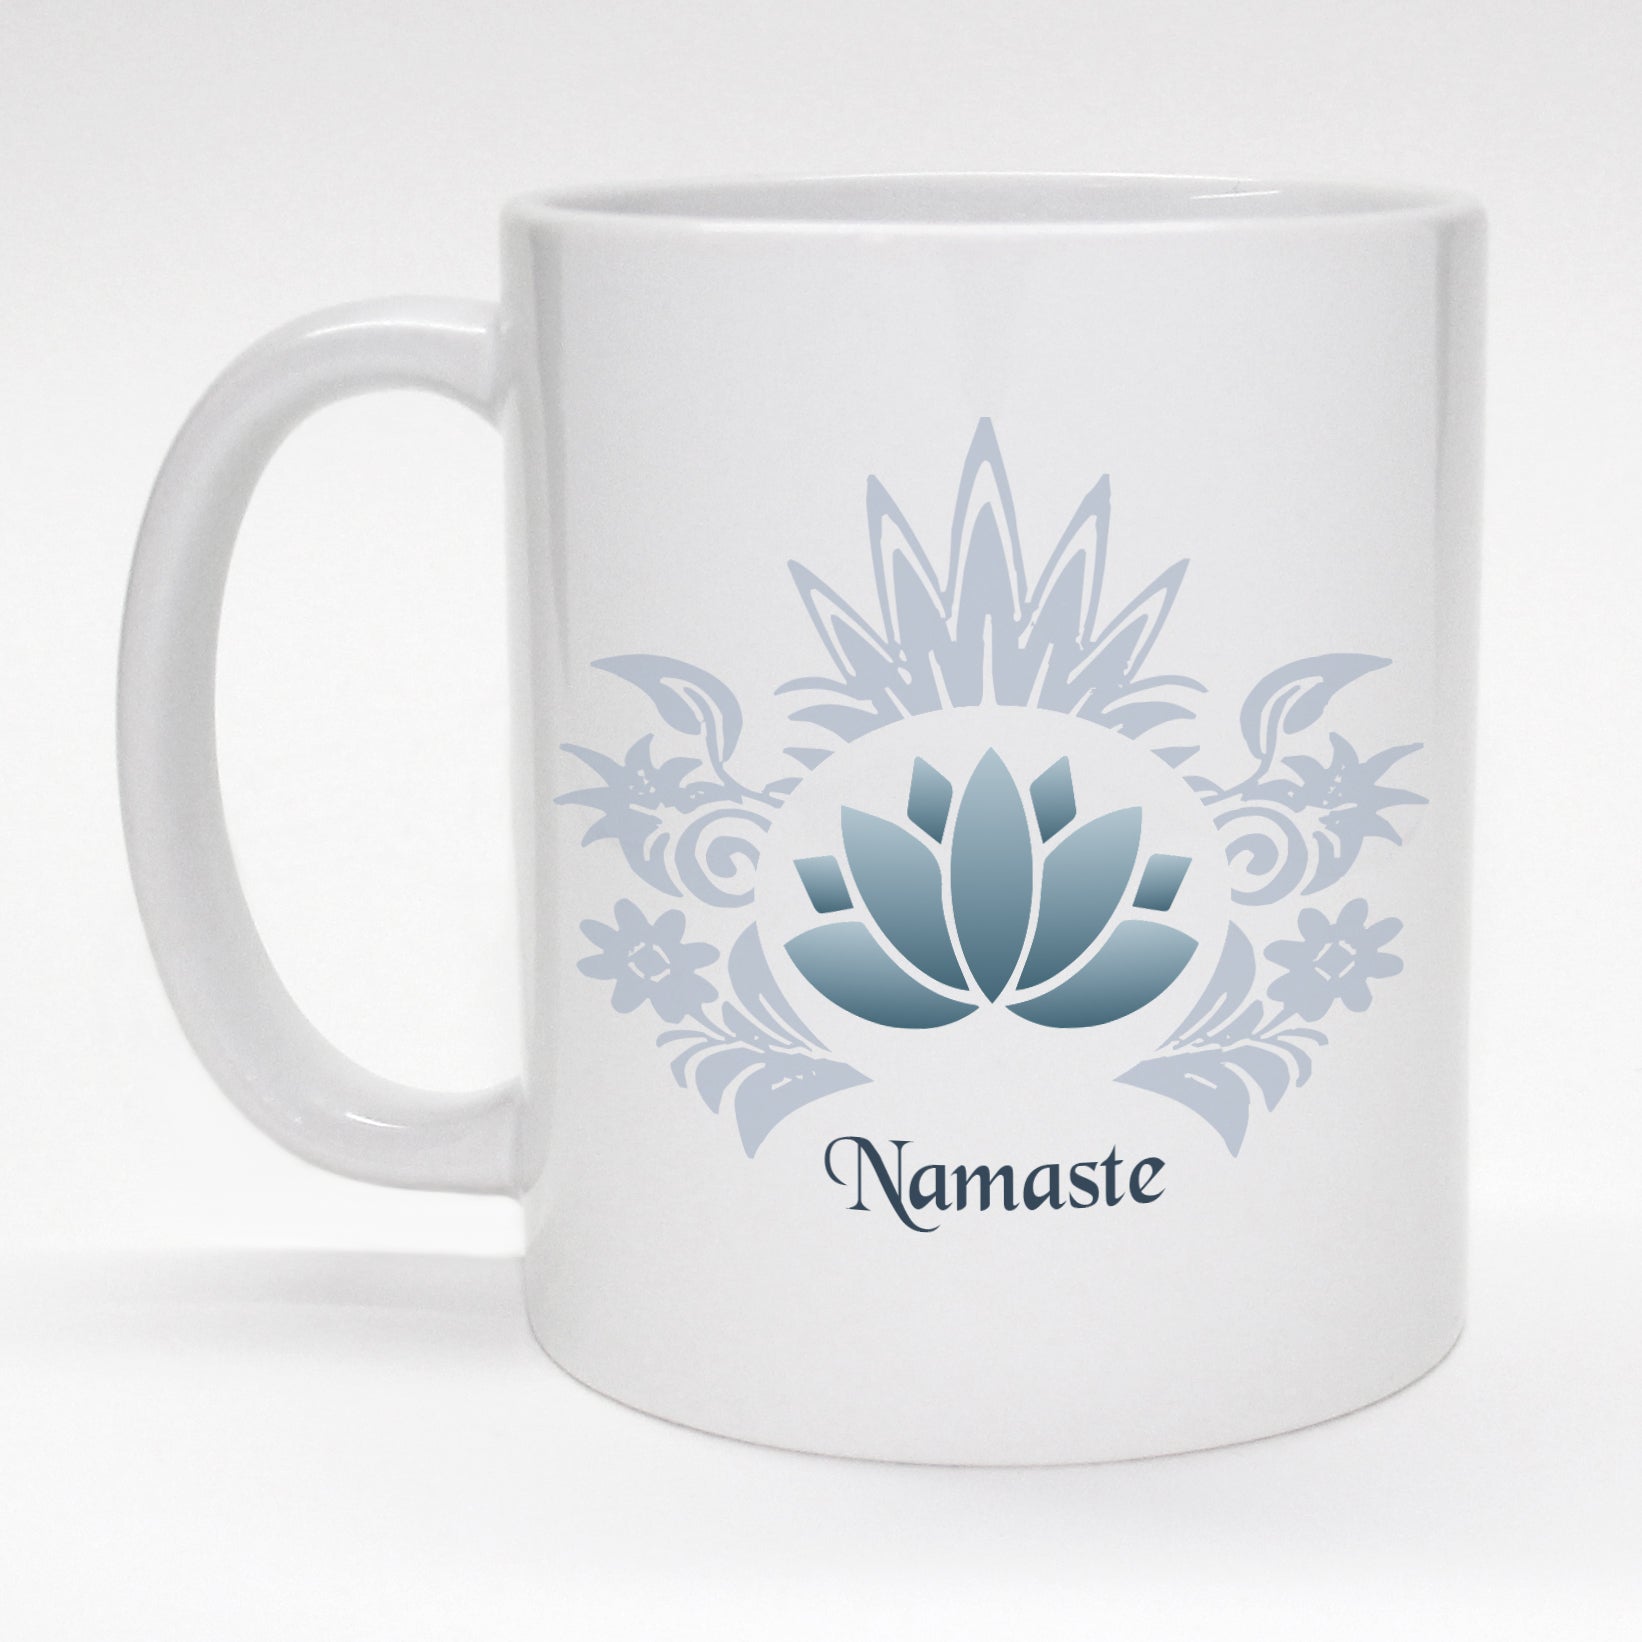 Namaste Mug | Coffee & Tea Gifts | Atomic Mugs